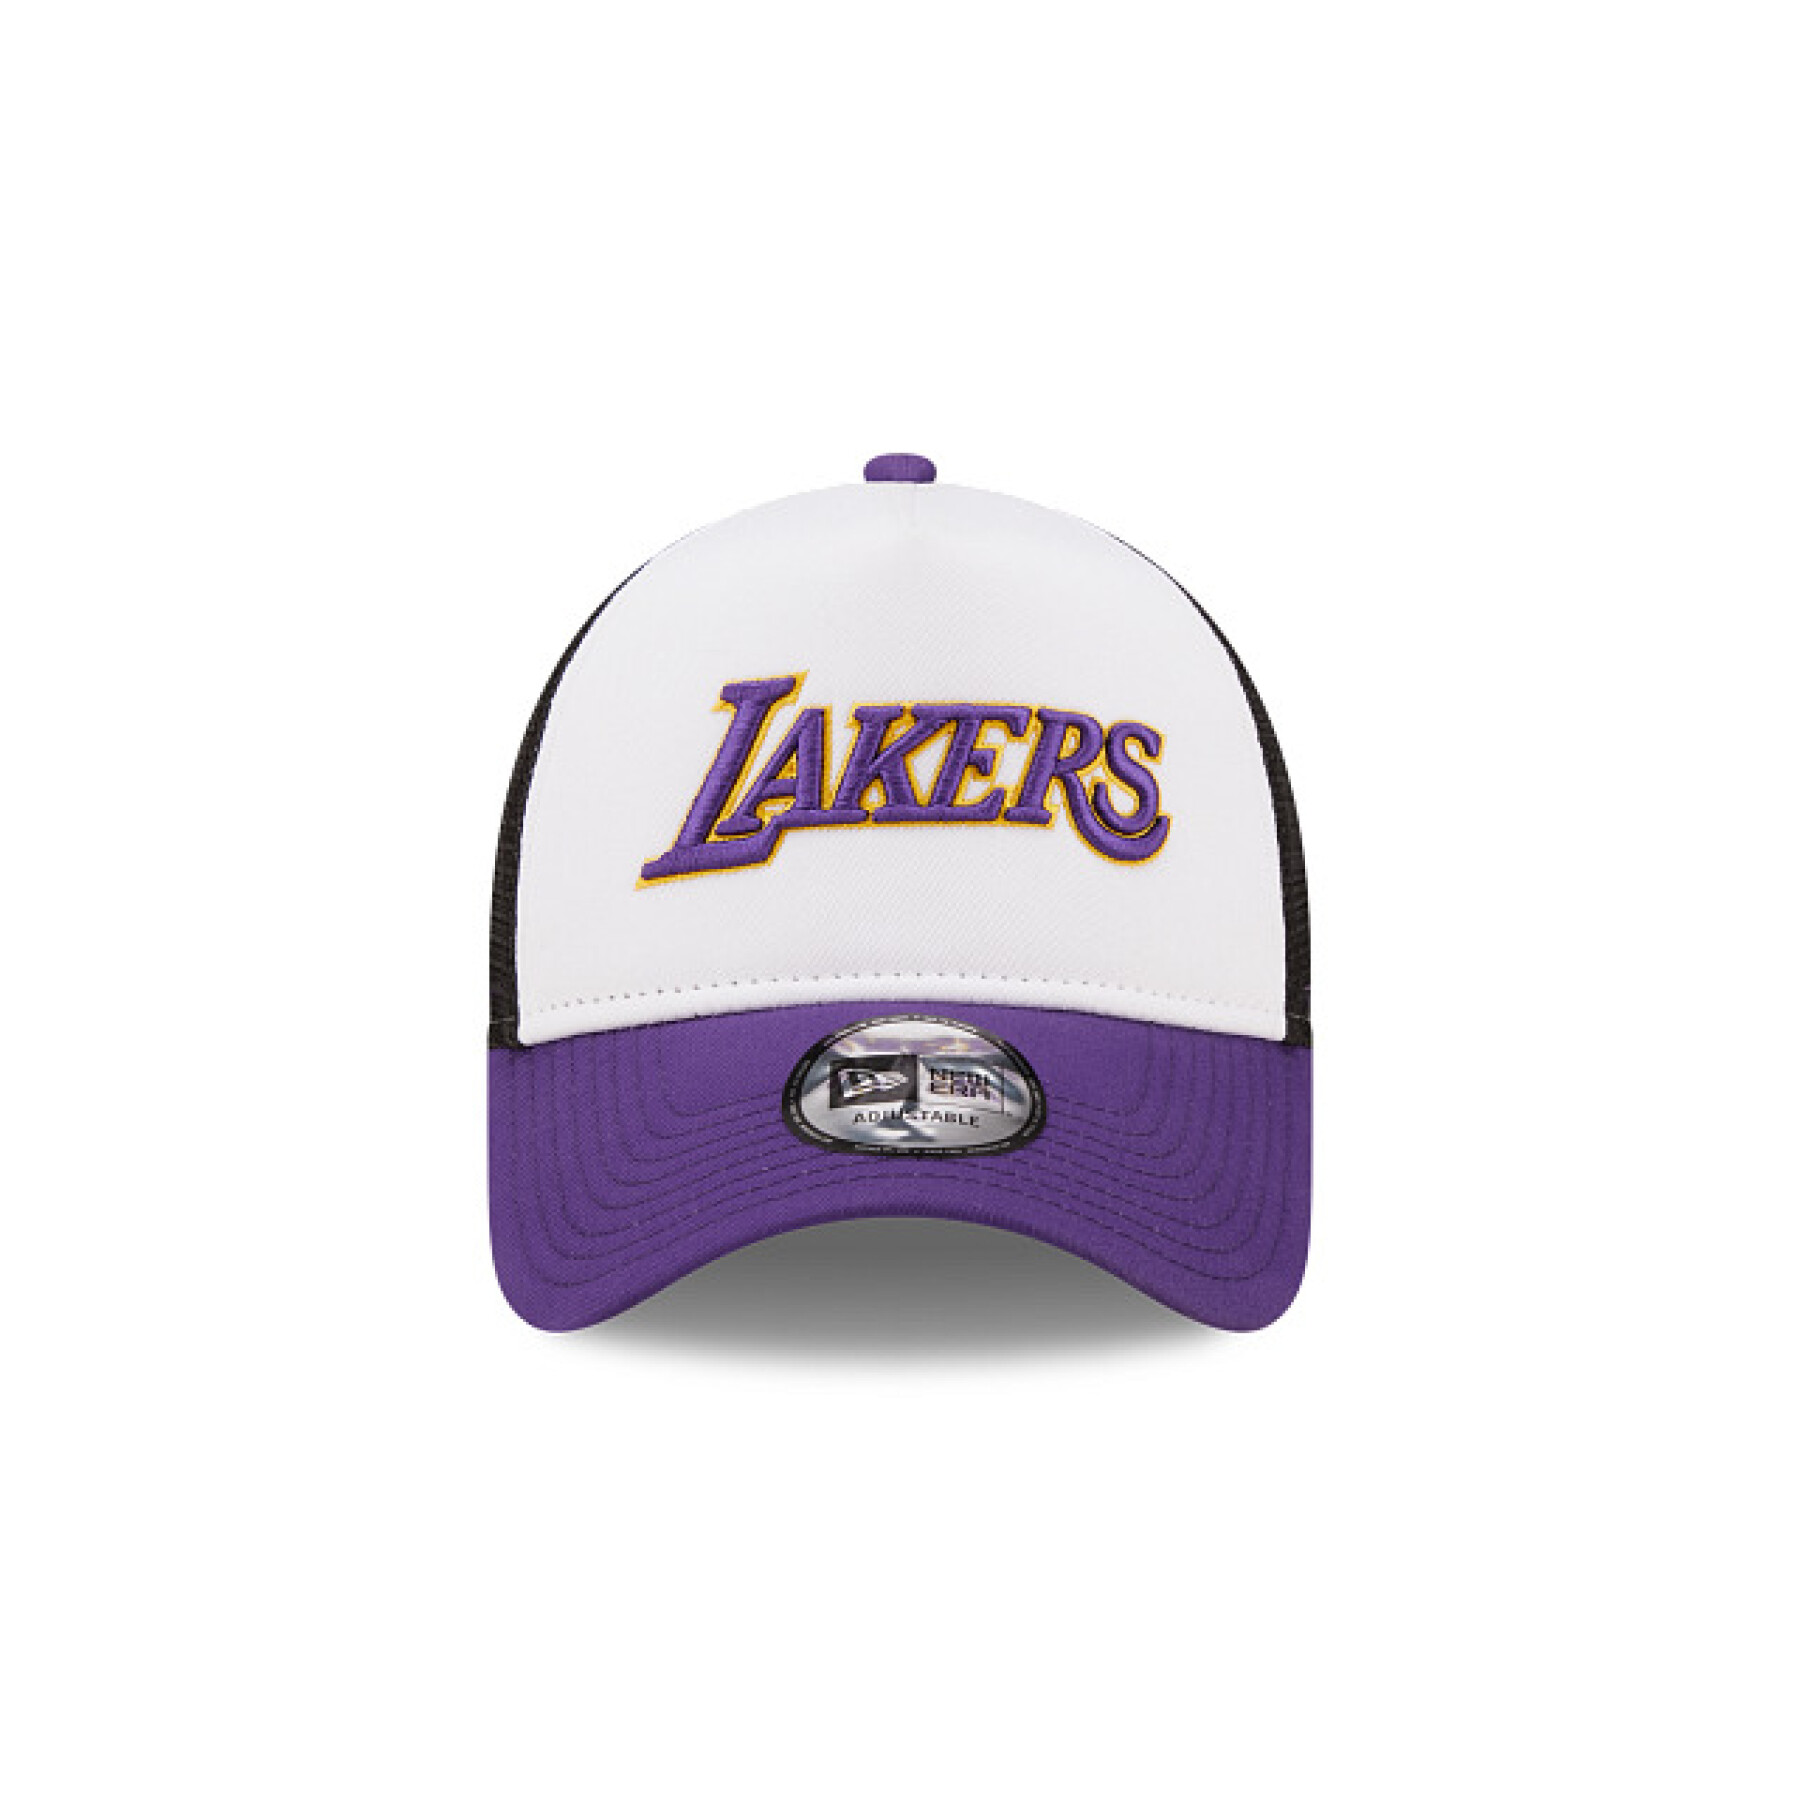 Gorra de los Lakers